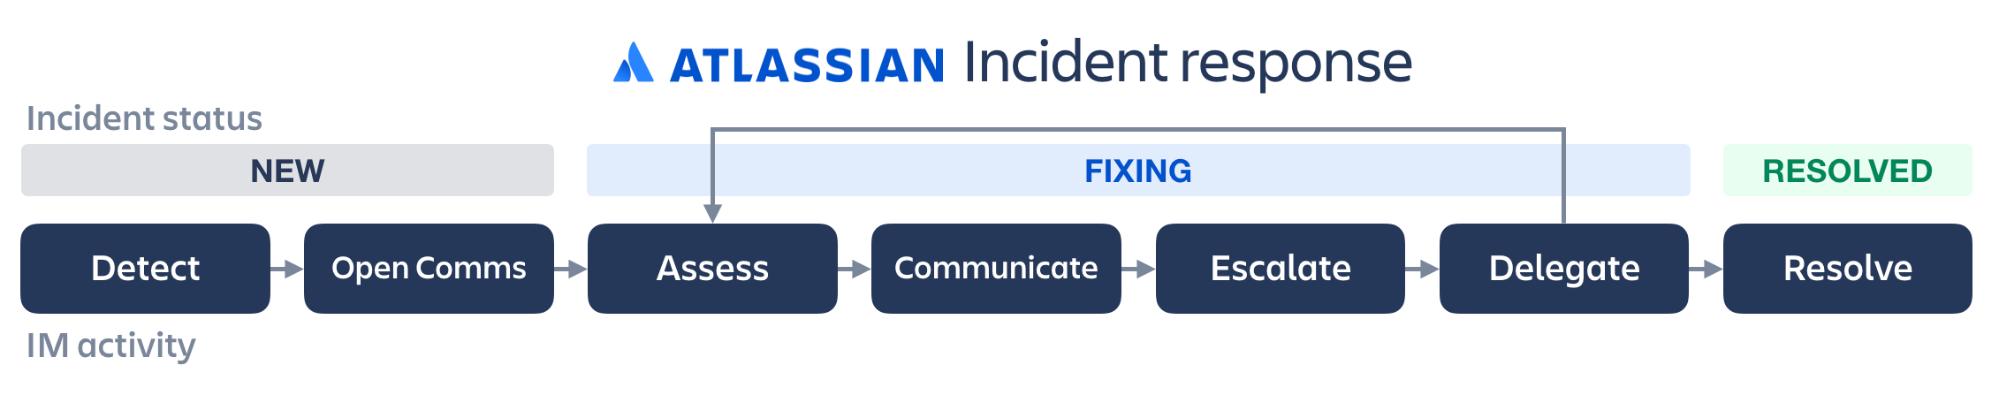 Illustration zur Incident Response: Erkennung, Öffnen der Kommunikation, Bewertung, Kommunikation, Eskalation, Delegierung, Behebung